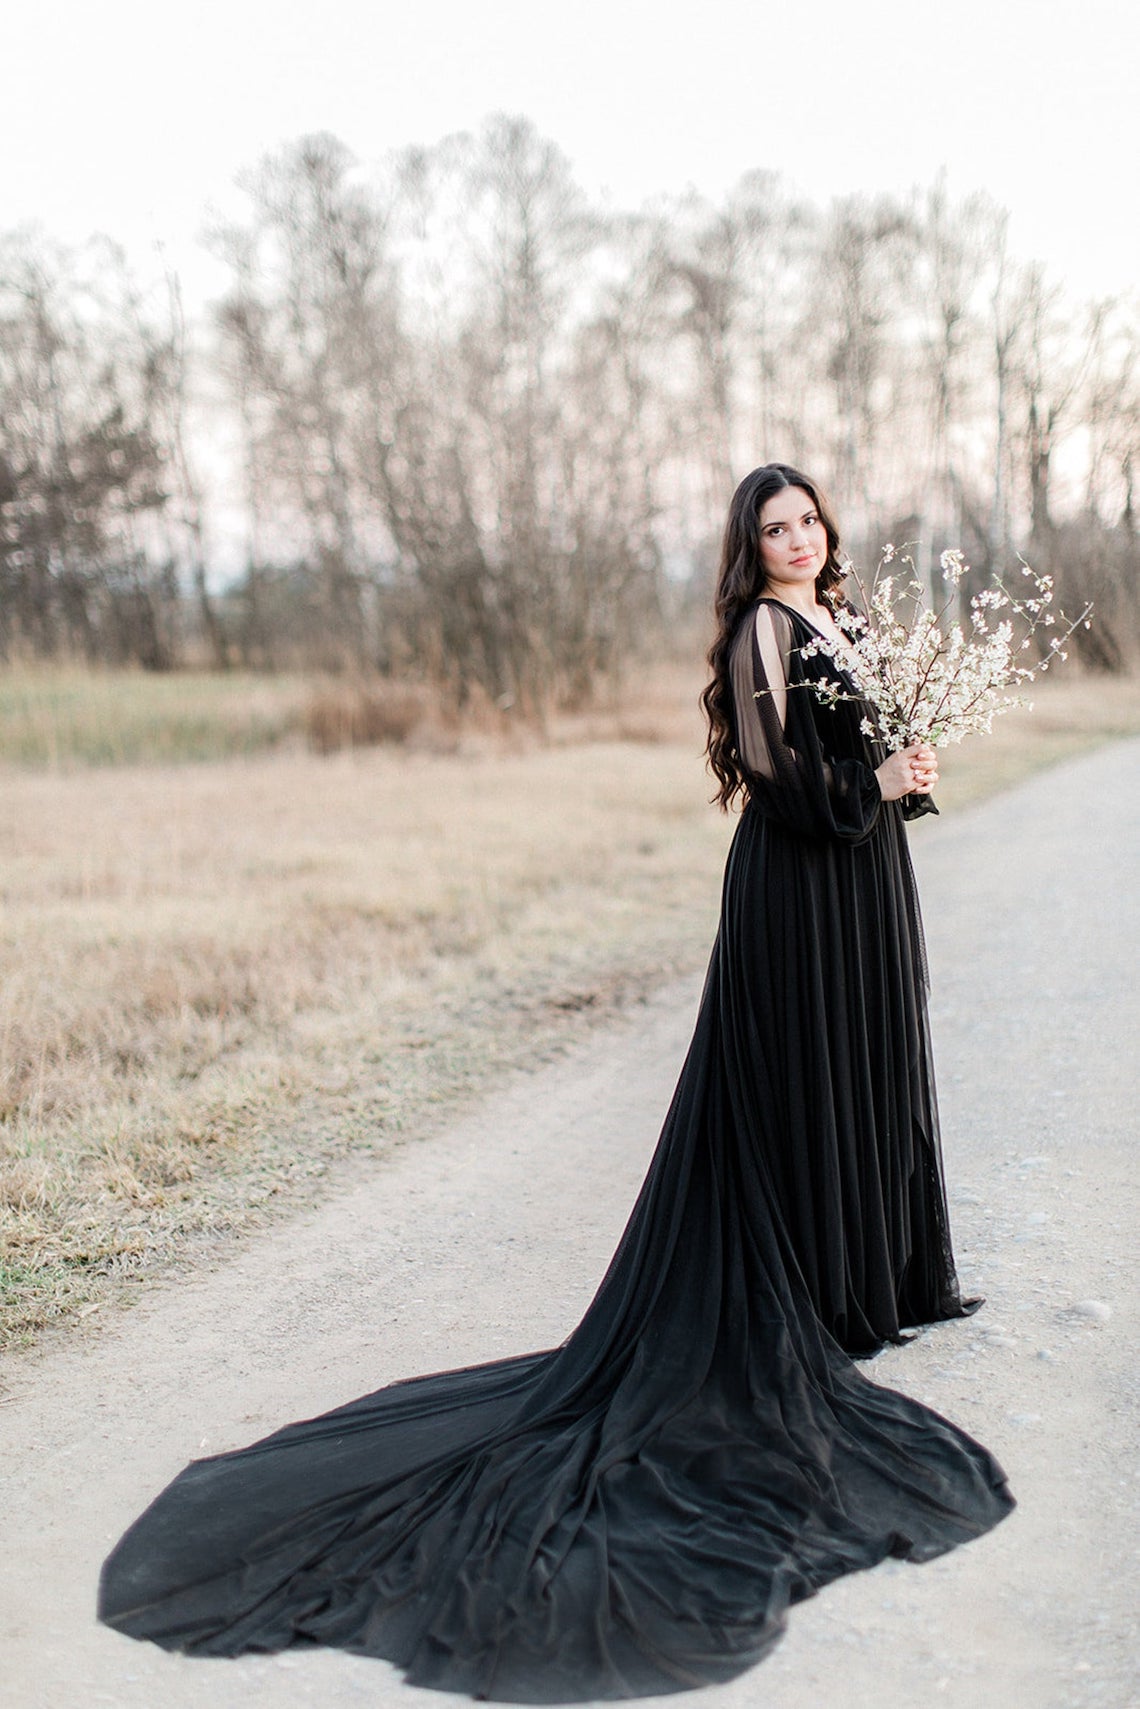 Hannah Tikannen Black Wedding Dress Gorgeous Black Wedding Dresses for the Alternative Bride Bridal Musings - 30 chiếc váy cưới màu đen mà chúng tôi yêu thích cho cô dâu thay thế